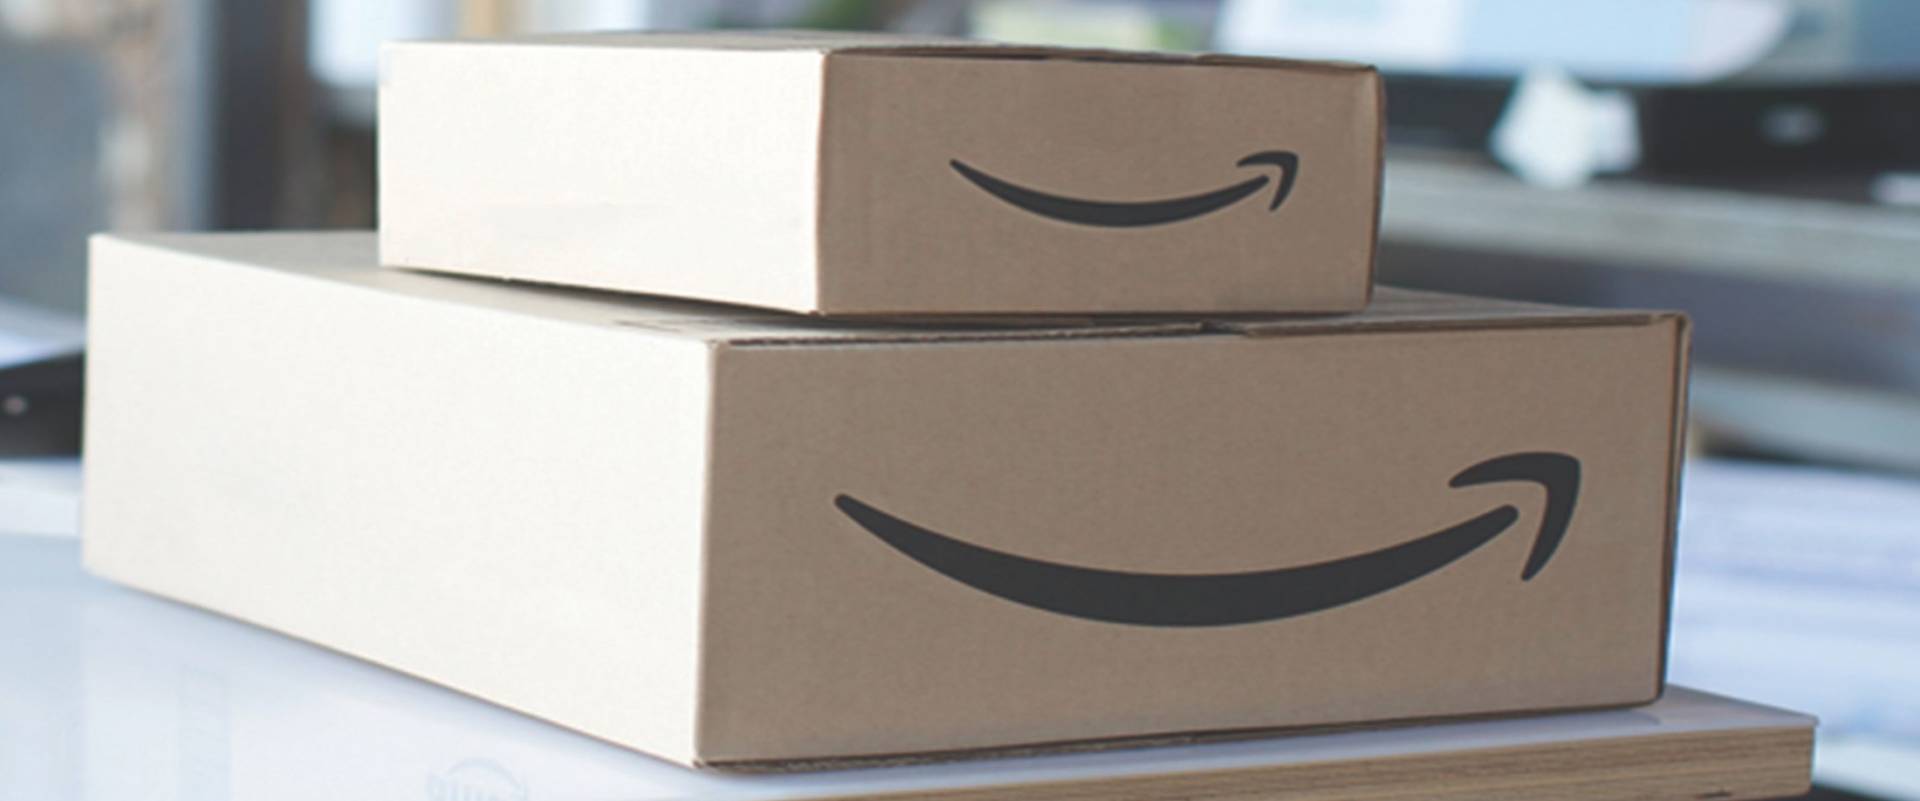 Amazon Prime: cancellarsi dal servizio diventa più facile